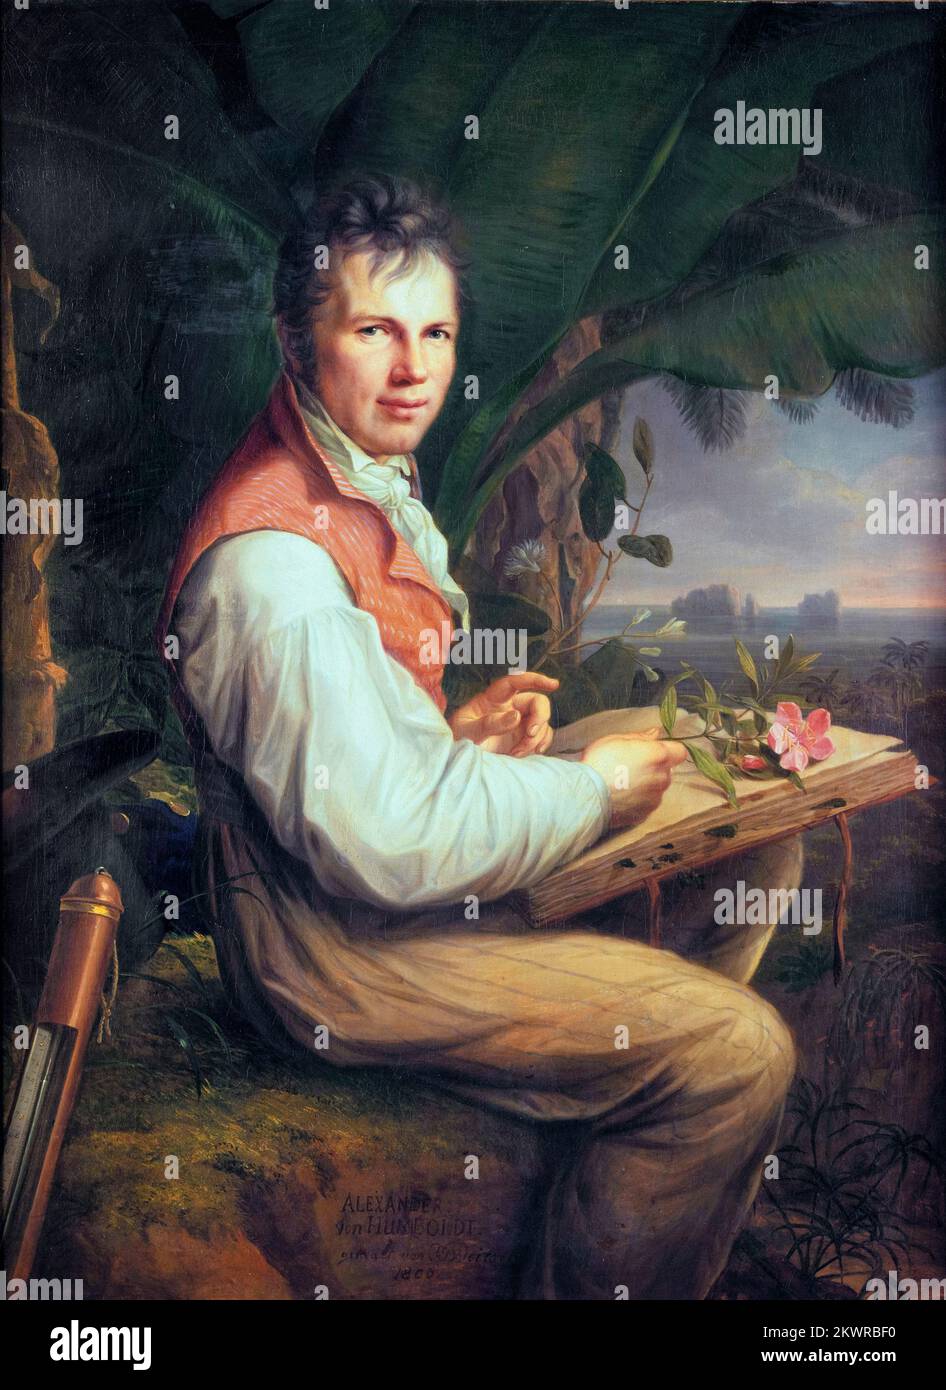 Alexander von Humboldt, (1769-1859), polymath allemand, géographe, naturaliste et explorateur, portrait peint à l'huile sur toile par Friedrich Georg Weitsch, 1806 Banque D'Images